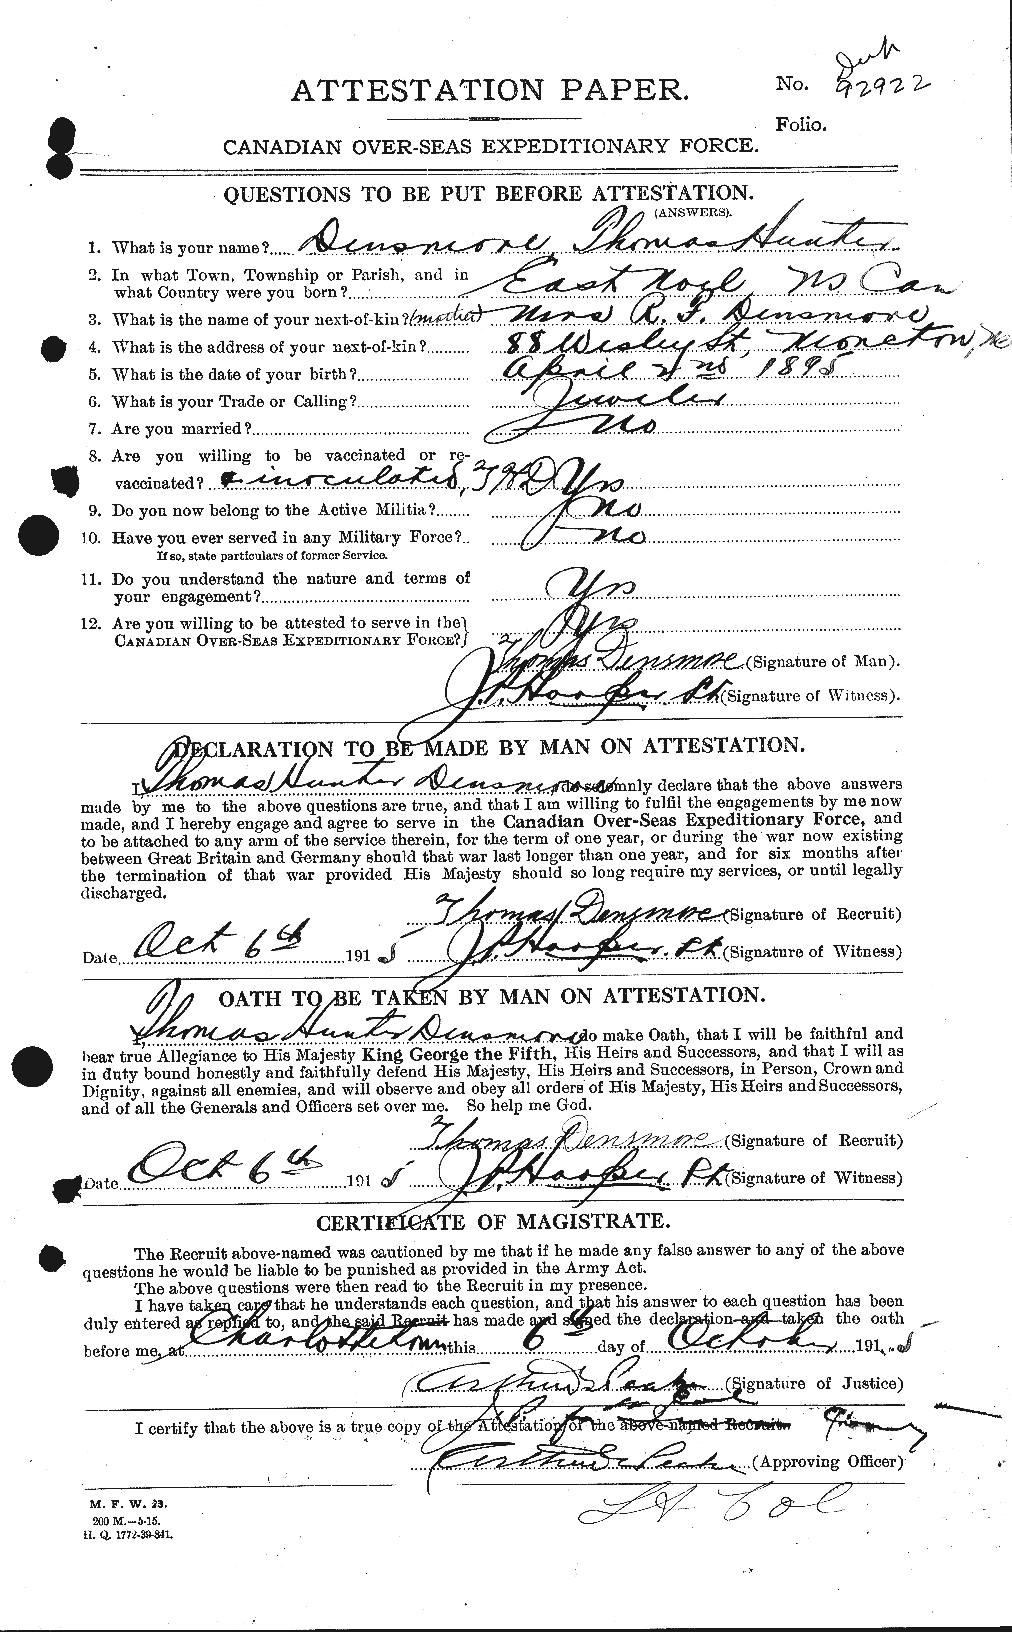 Dossiers du Personnel de la Première Guerre mondiale - CEC 286440a